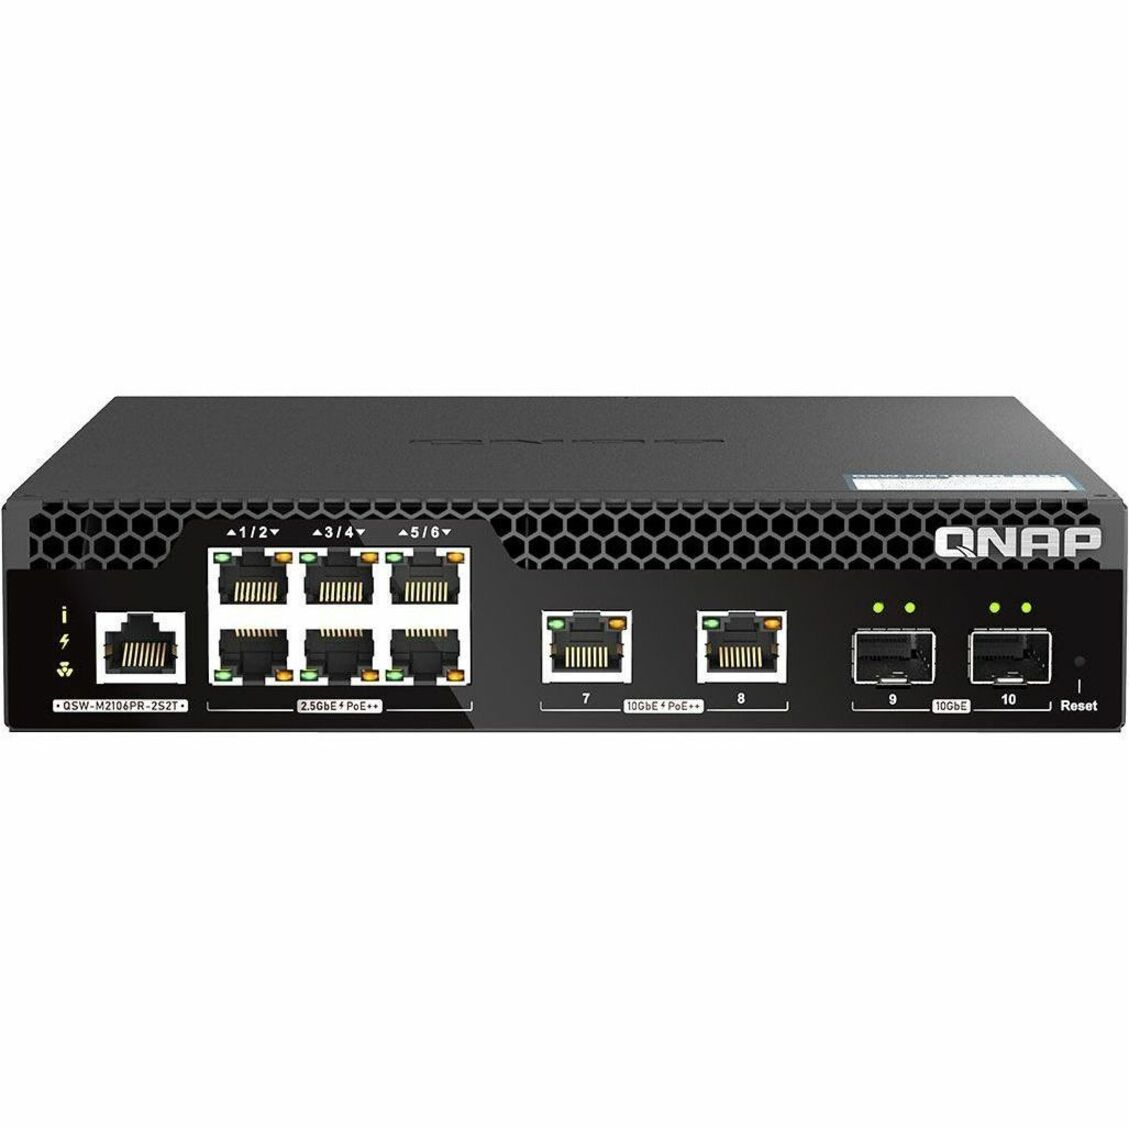 QNAP QSW-M2106PR-2S2T-US QSW-M2106PR-2S2T Ethernet Switch, 8 Ports, 10Gigabit Ethernet, 2.5Gigabit Ethernet, PoE++